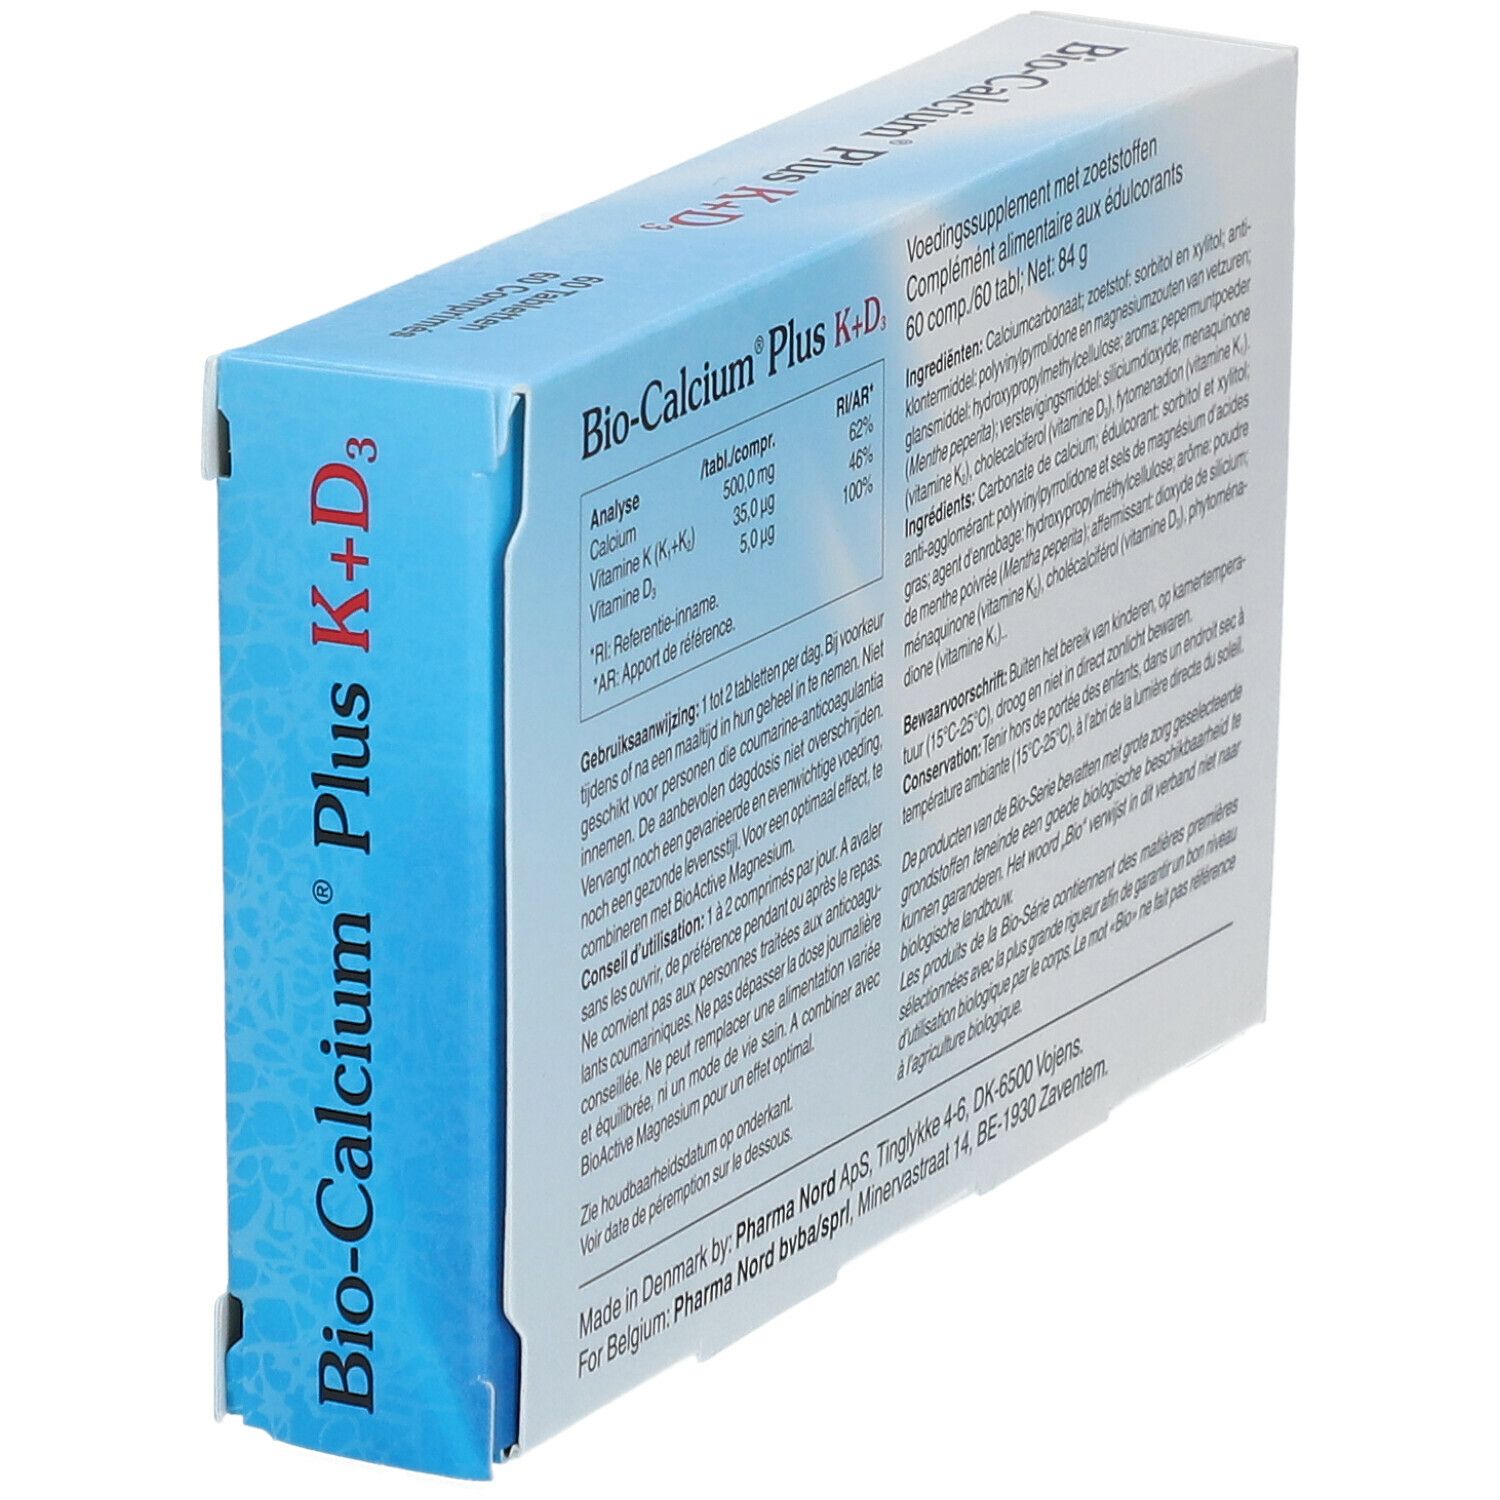 Pharma Nord Bio-Calcium® Plus K + D3